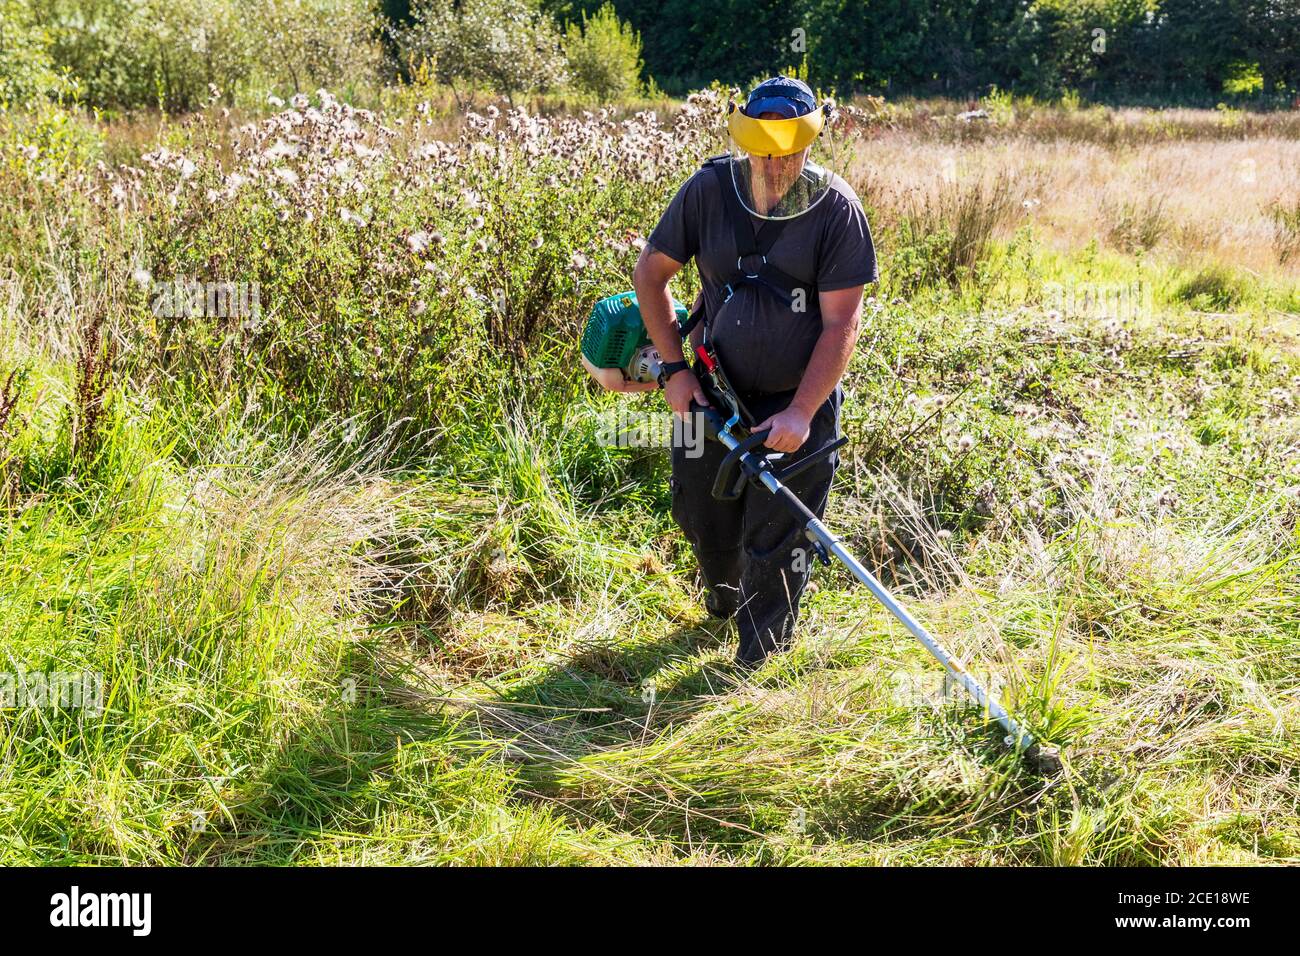 Mann, der einen überwucherten Garten streift, einen industriellen Strimer verwendet und ein Schutzvisier trägt, Kilwinning, Ayrshire, Schottland, Großbritannien Stockfoto